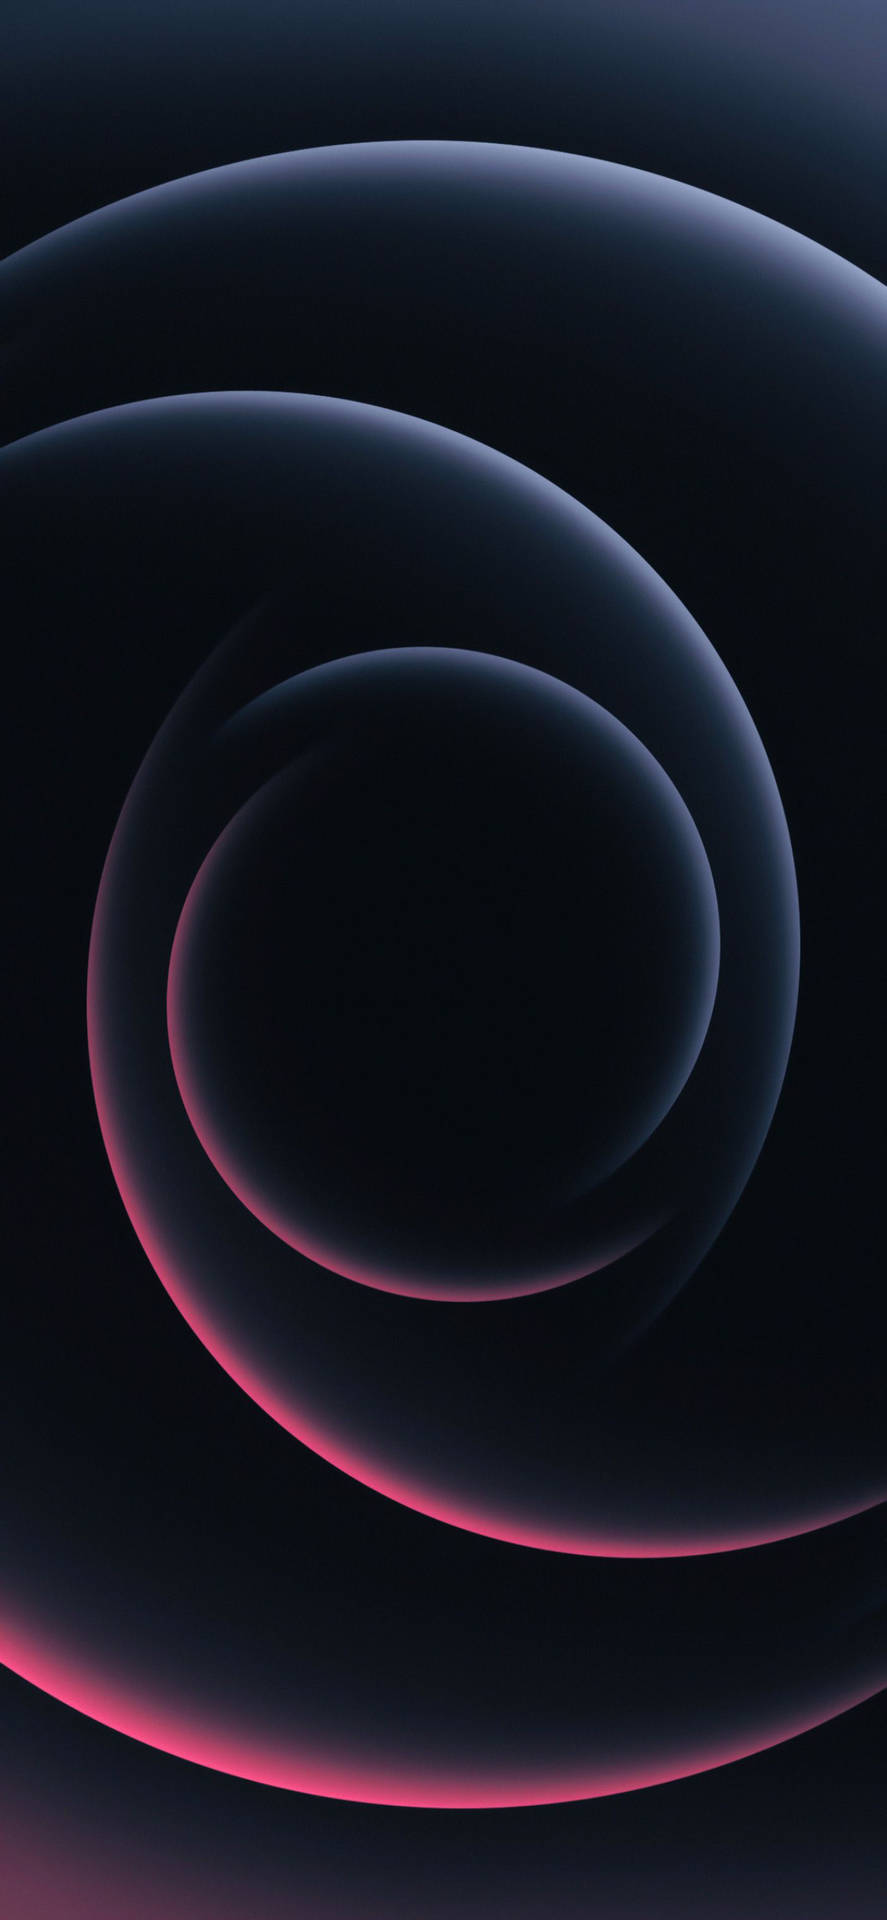 Pink Spiral Mønstre Iphone 2021 Wallpaper